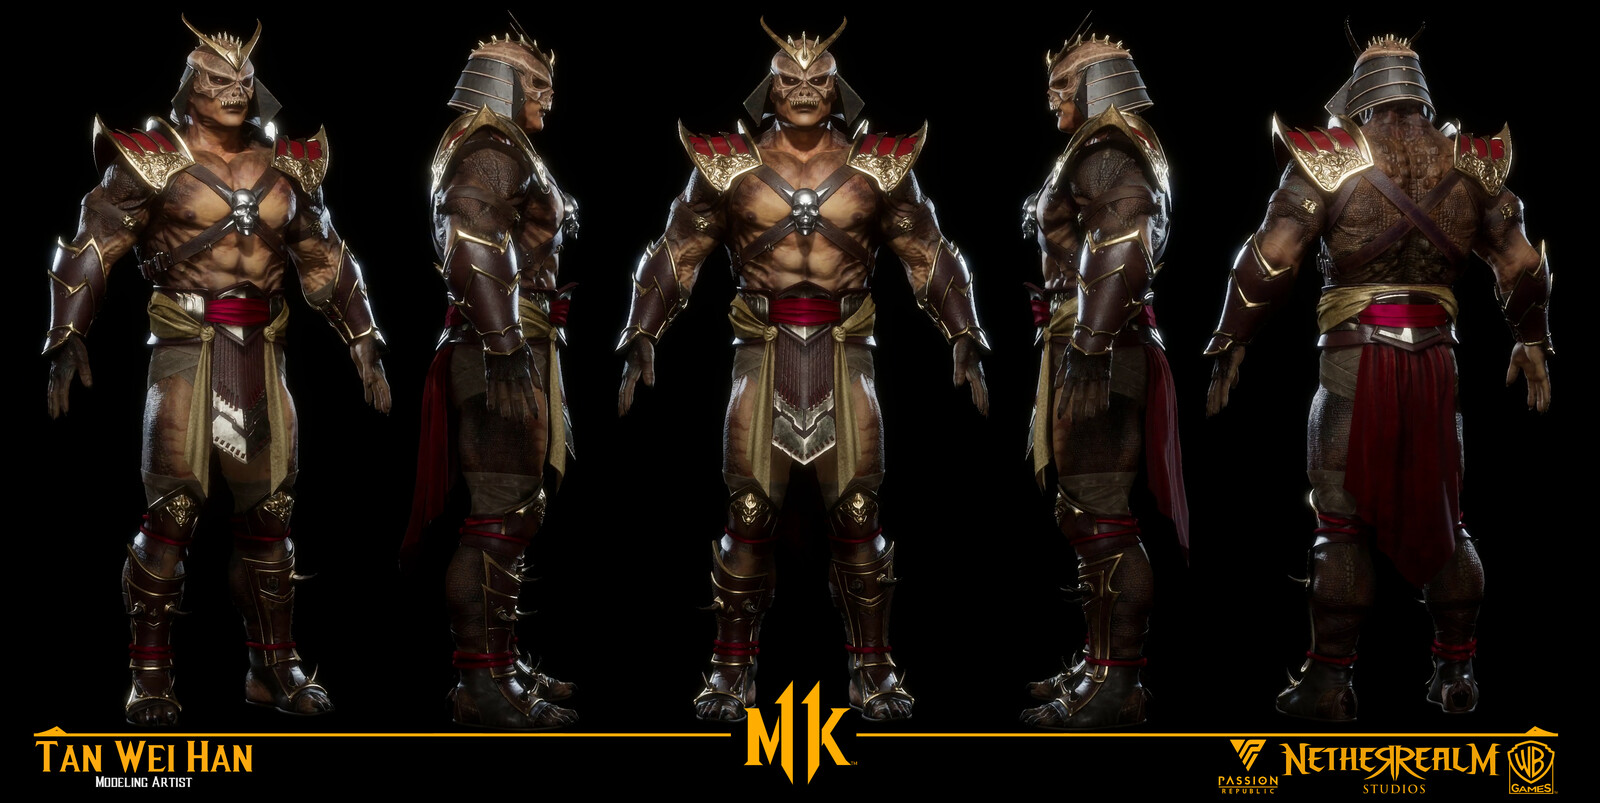 ArtStation - Mortal Kombat 11 - Shao Kahn Classic